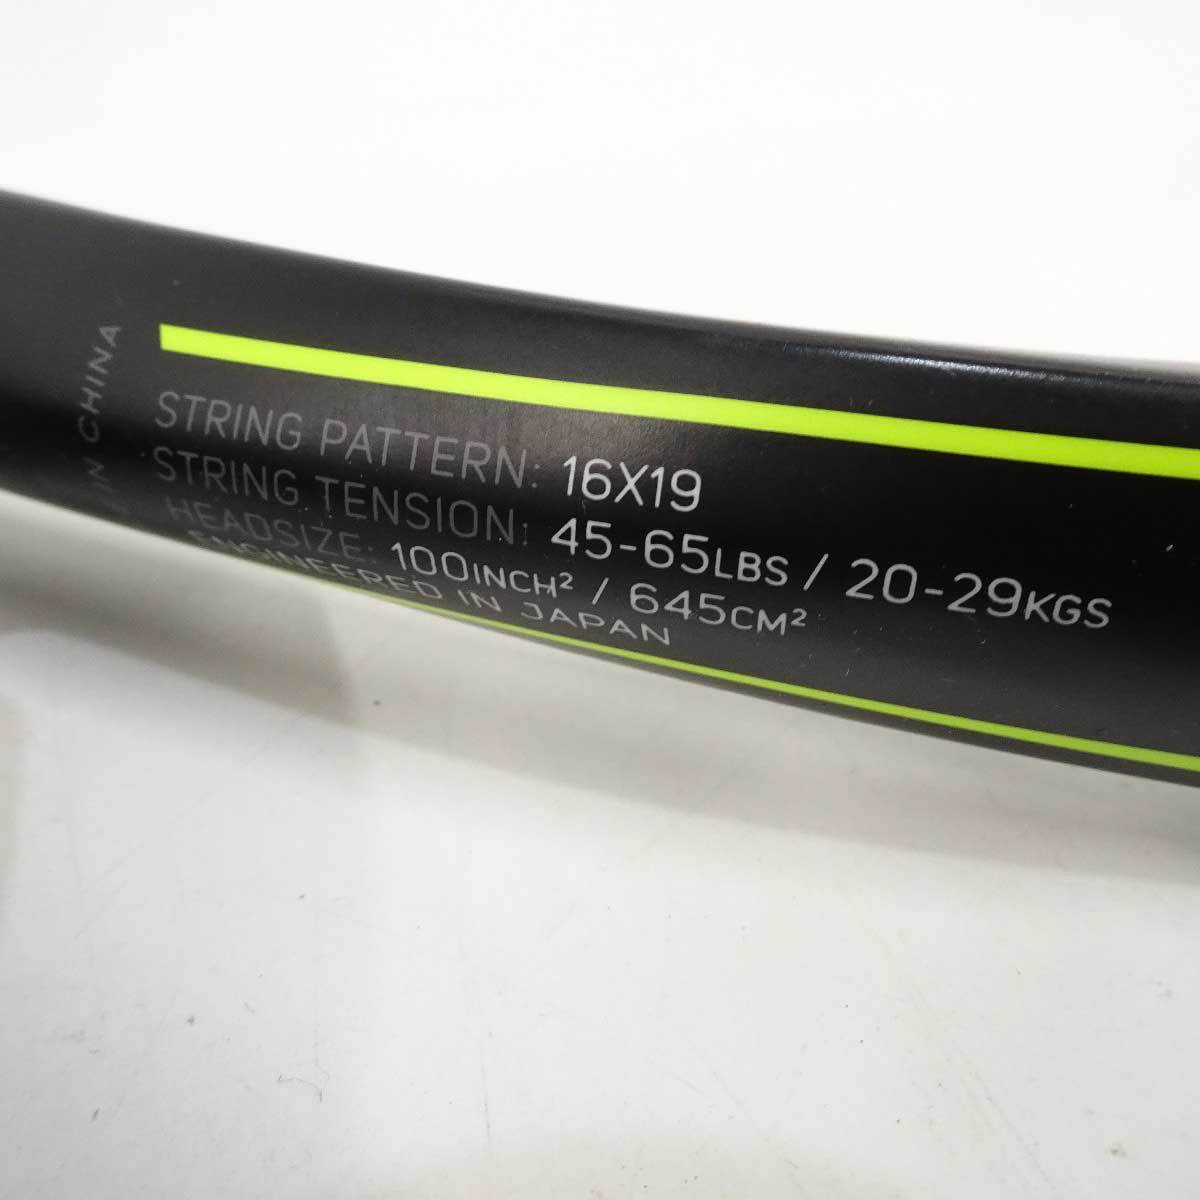 [ used ] Dunlop hardball tennis racket SX300LS G2 DUNLOP